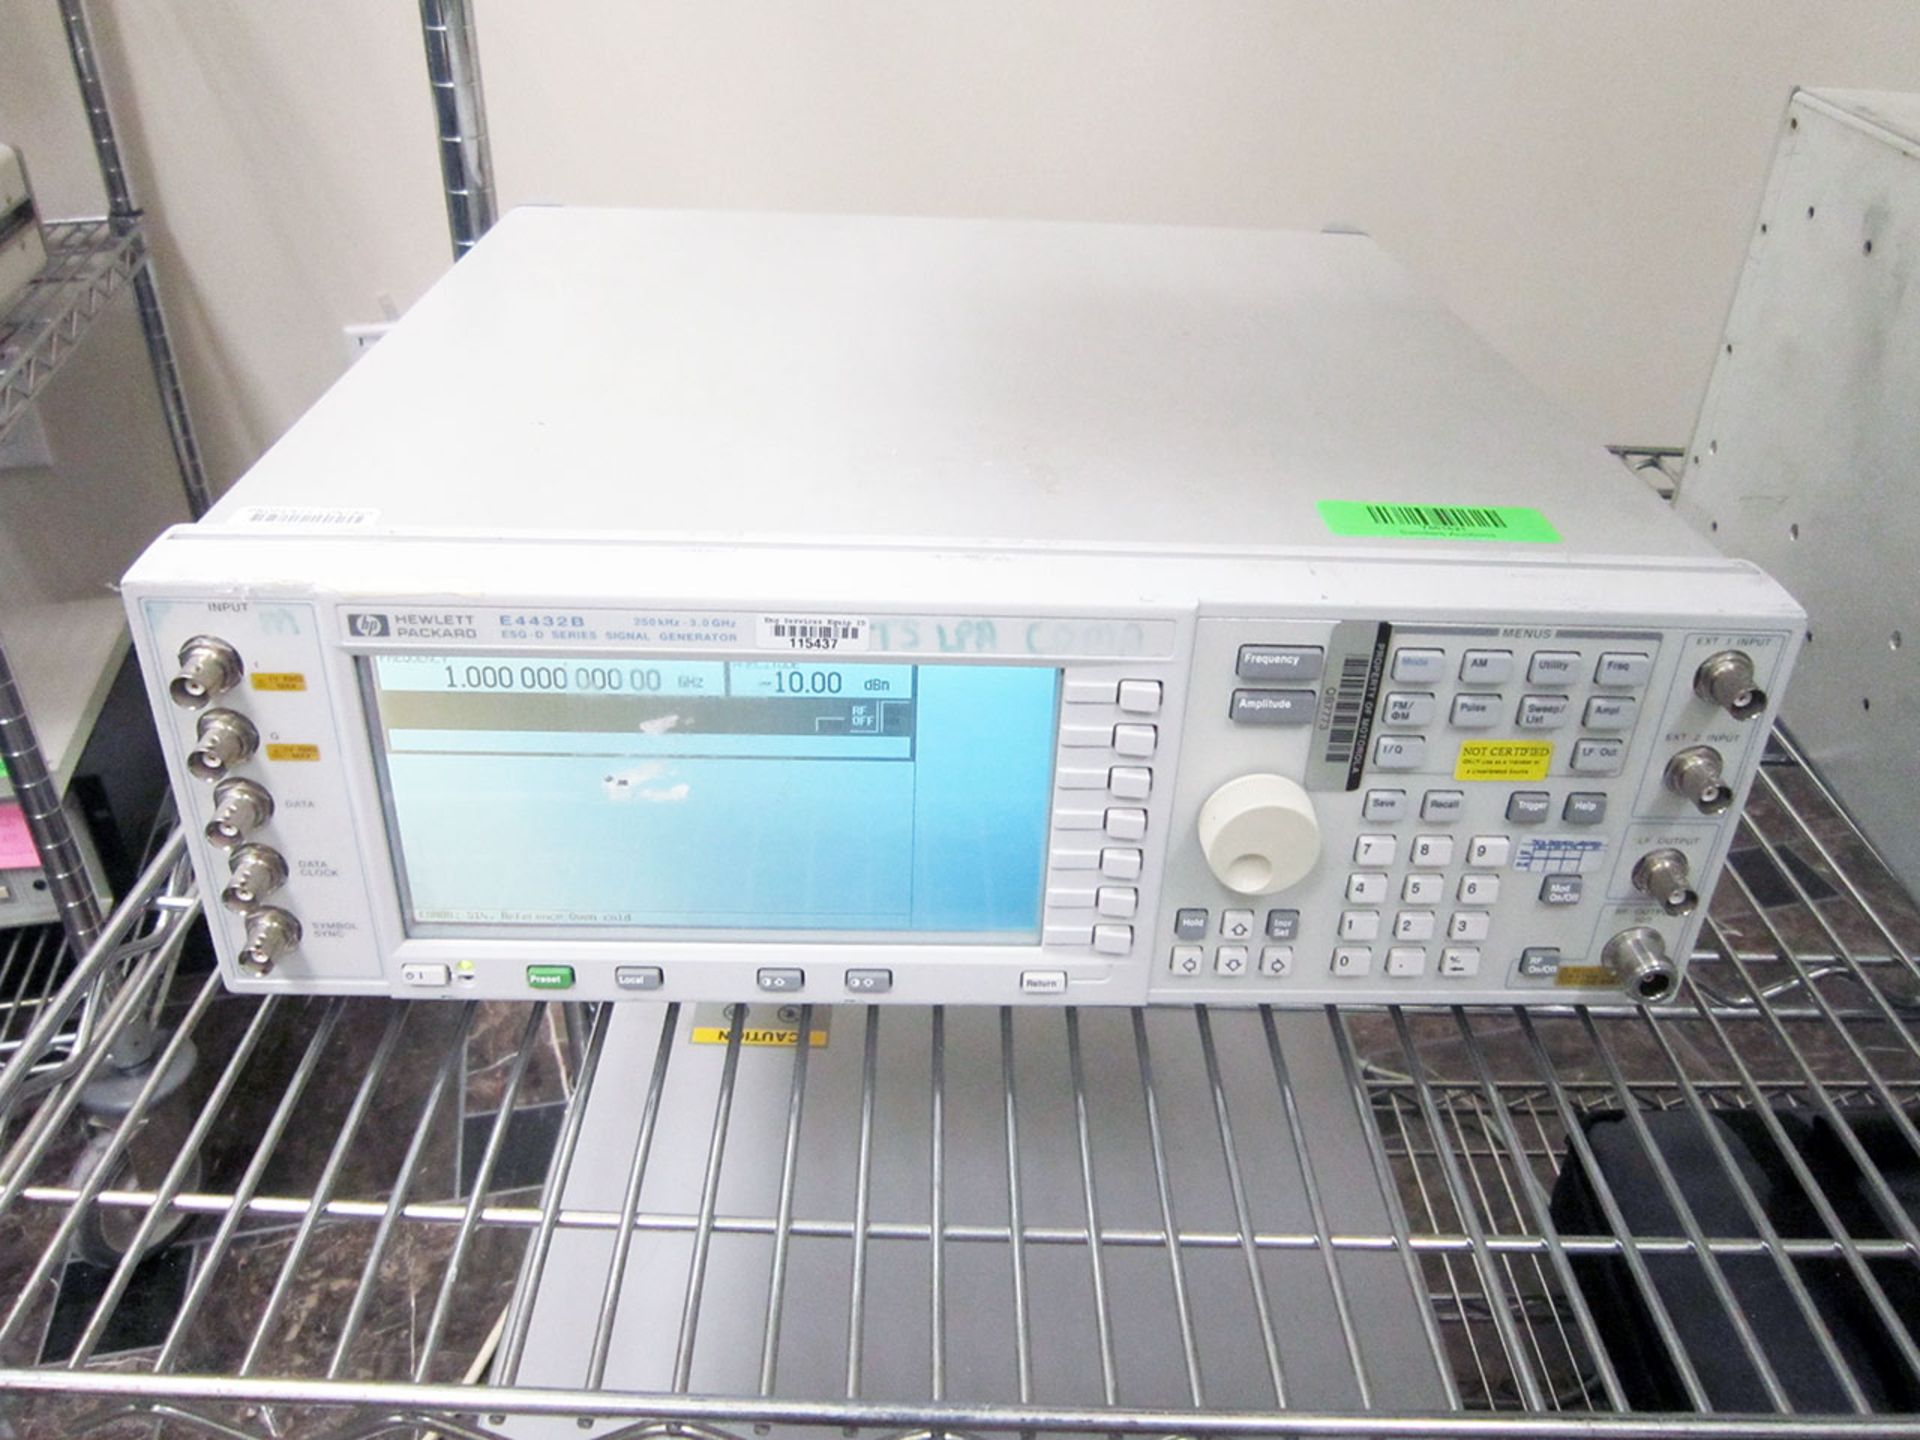 HP E4432B 4.0 GHz ESG-D Signal Generator Opt: 1E5 H61 H99 UN5 UND 150 151